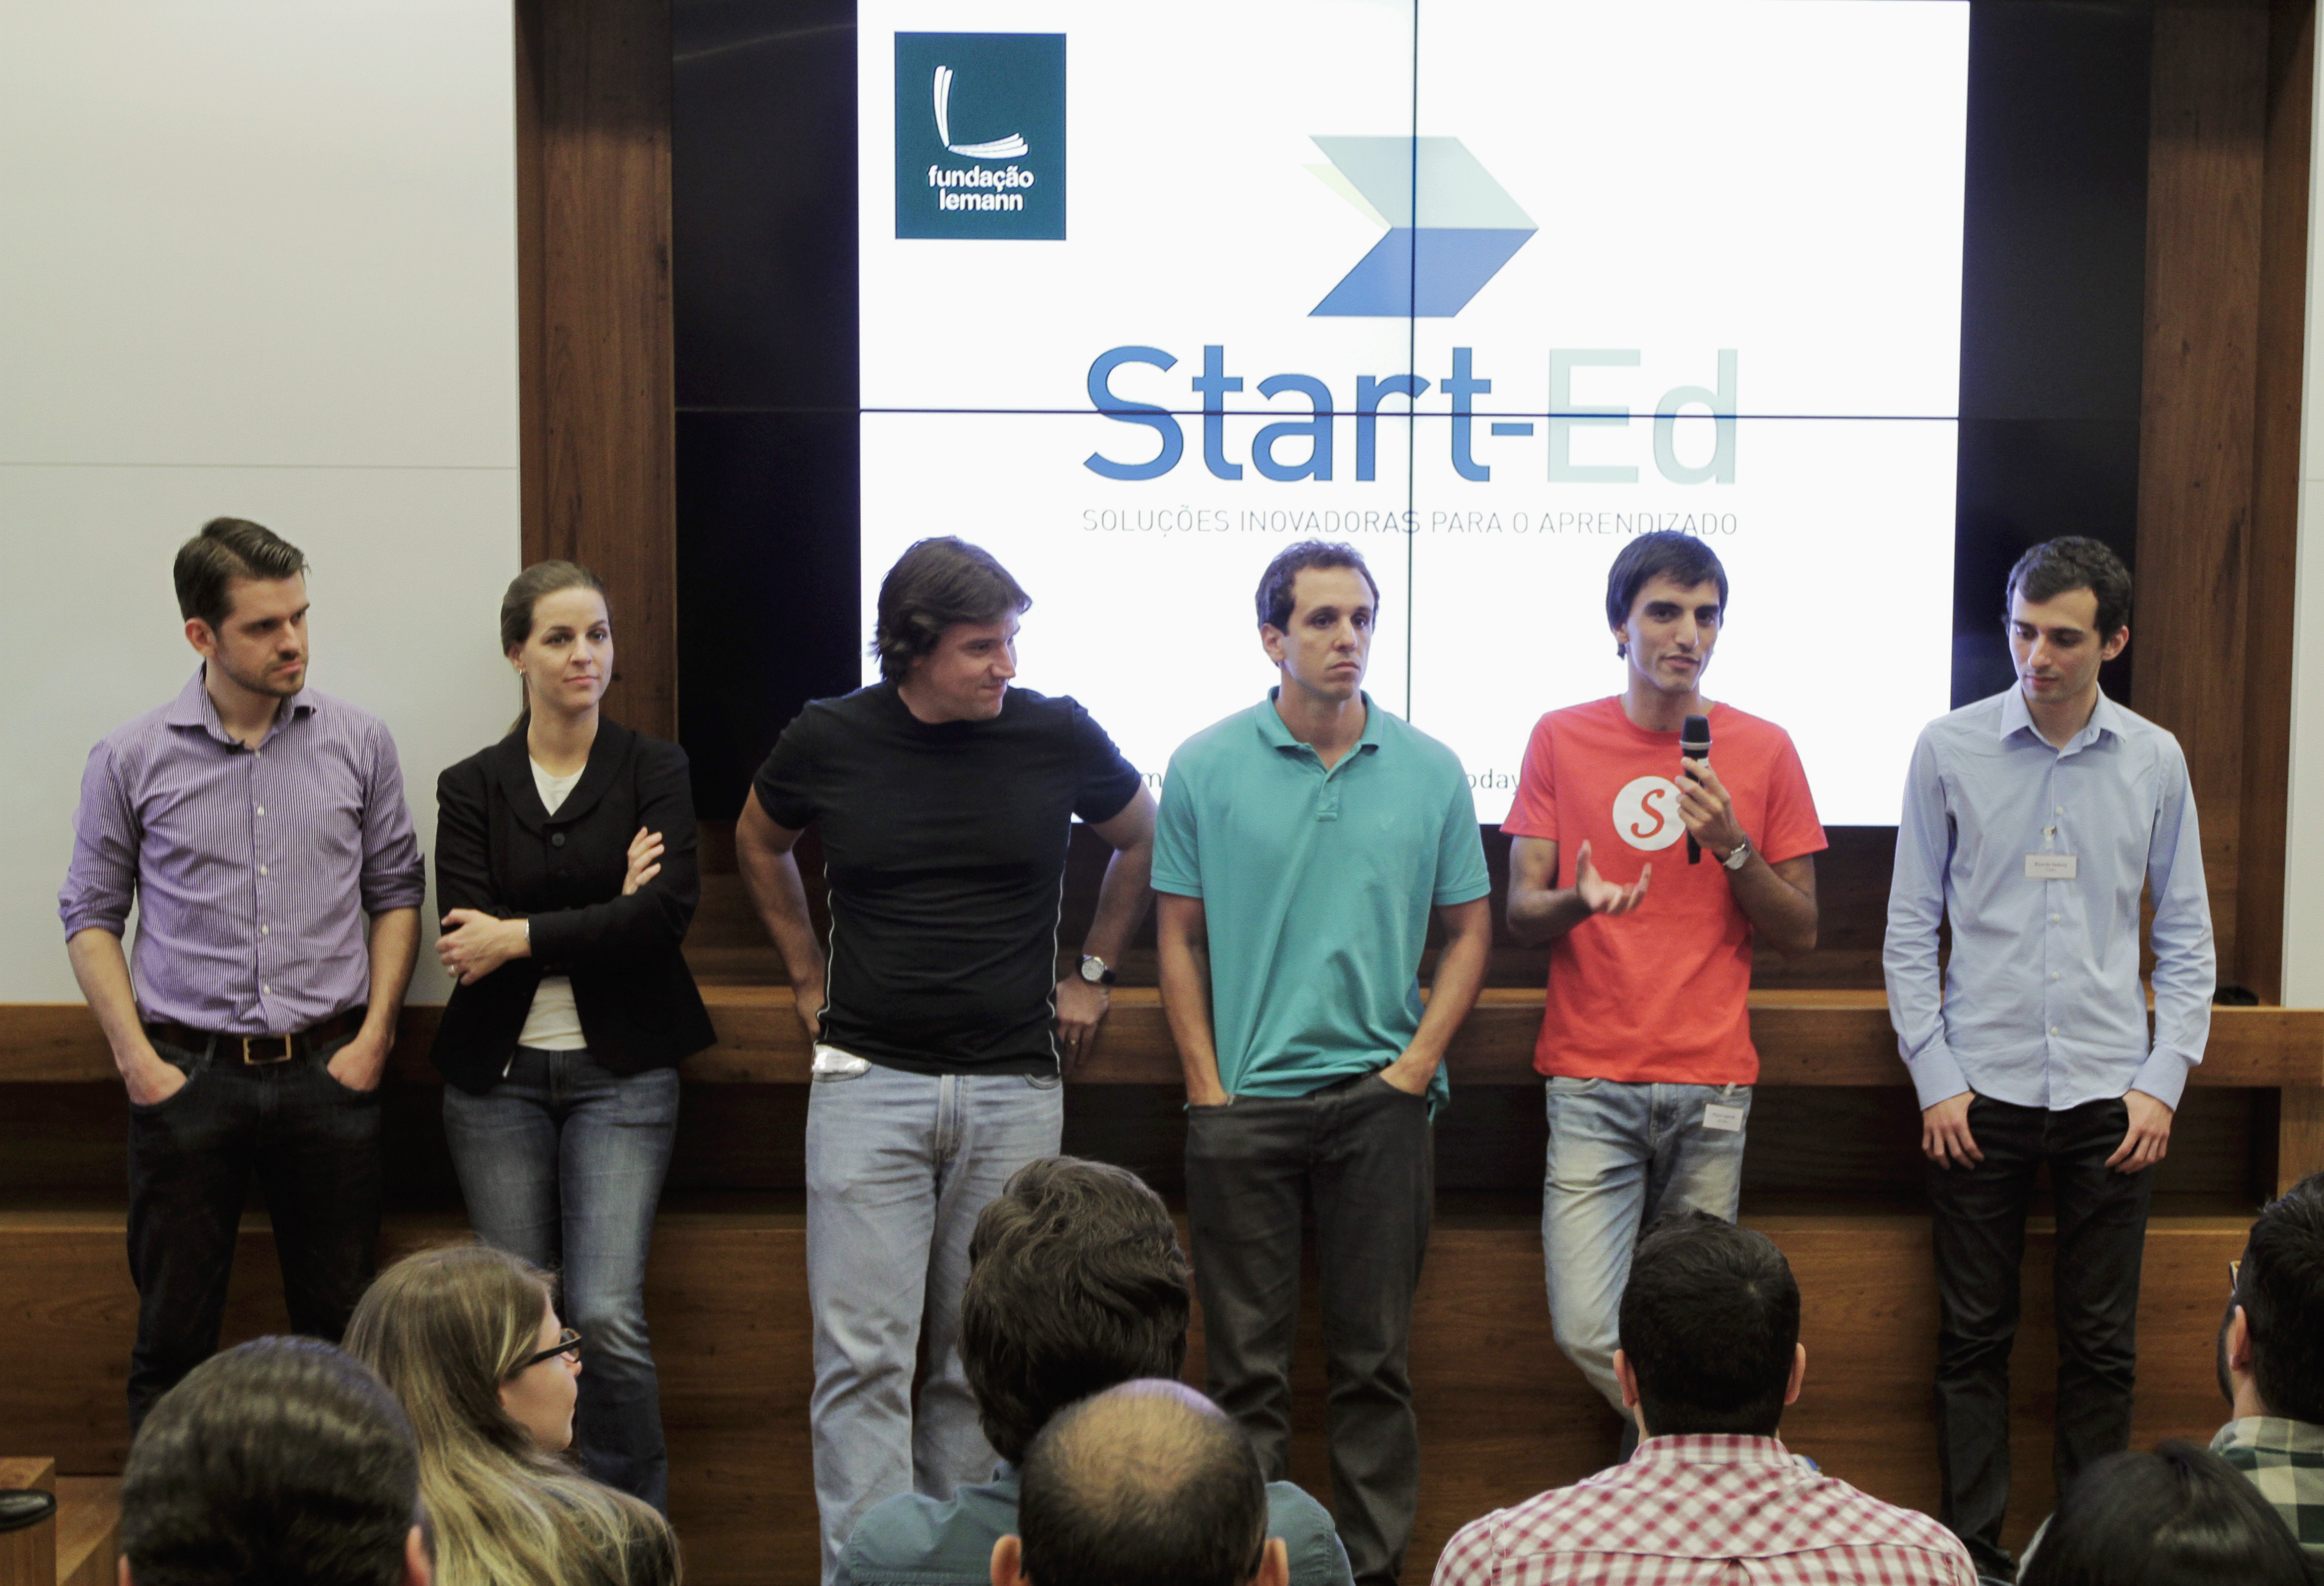 Empreendedores apoiados pelo Start-Ed apresentam suas ideias em SP (Foto: Divulgação/Rodrigo M. Morales)